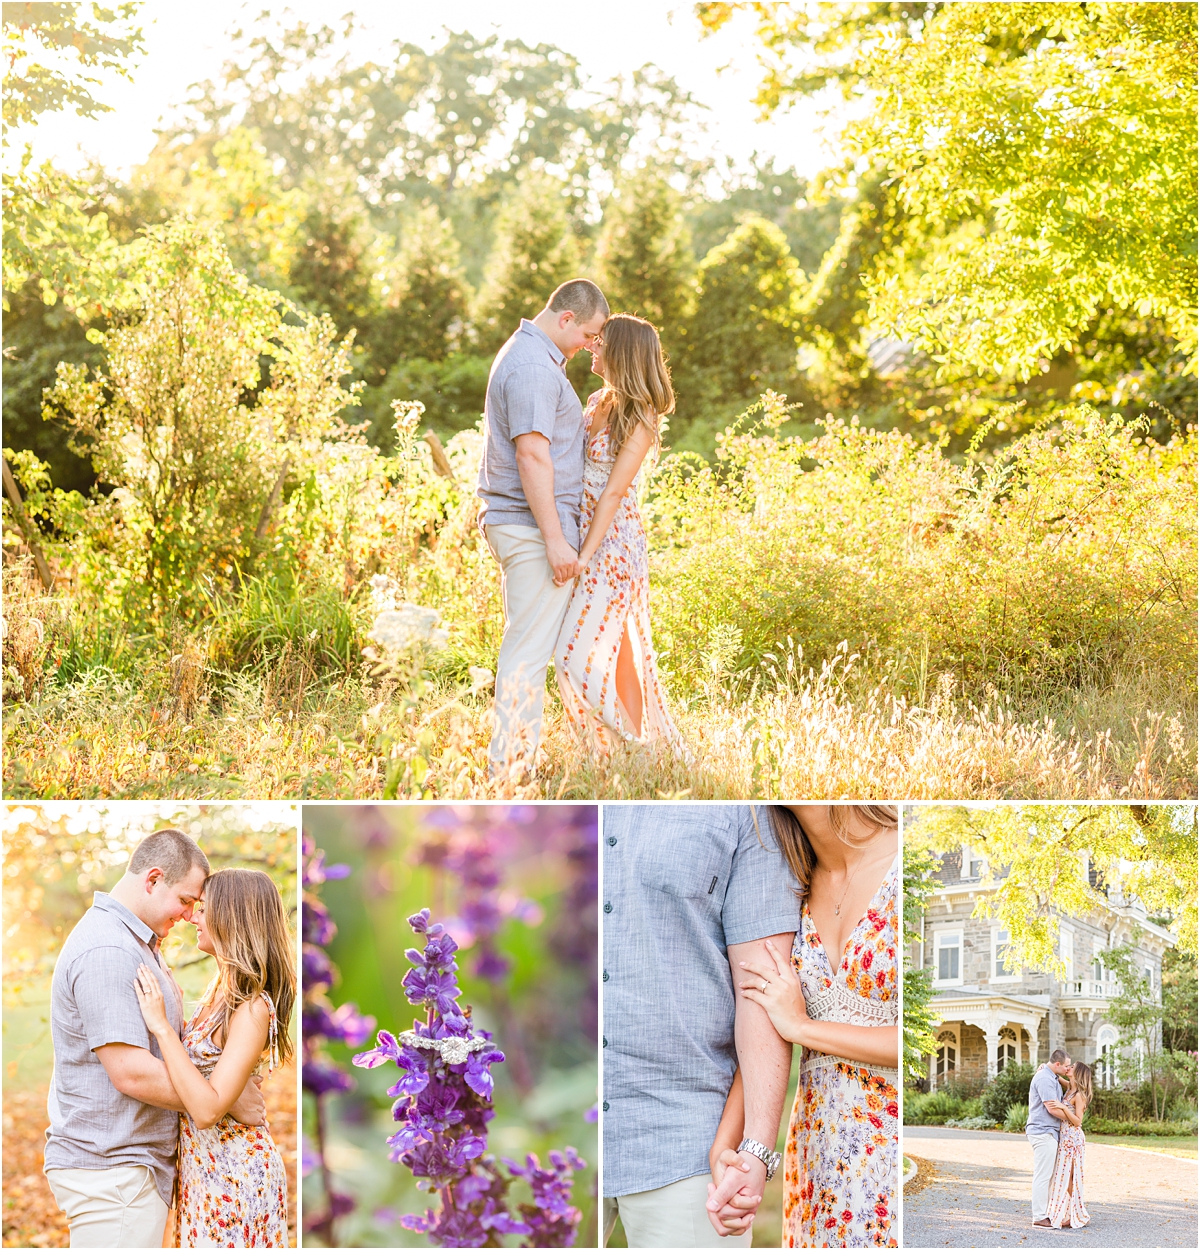 Cylburn Arboretum Engagement session photographed by MD wedding photographer Alexandra Mandato Photography